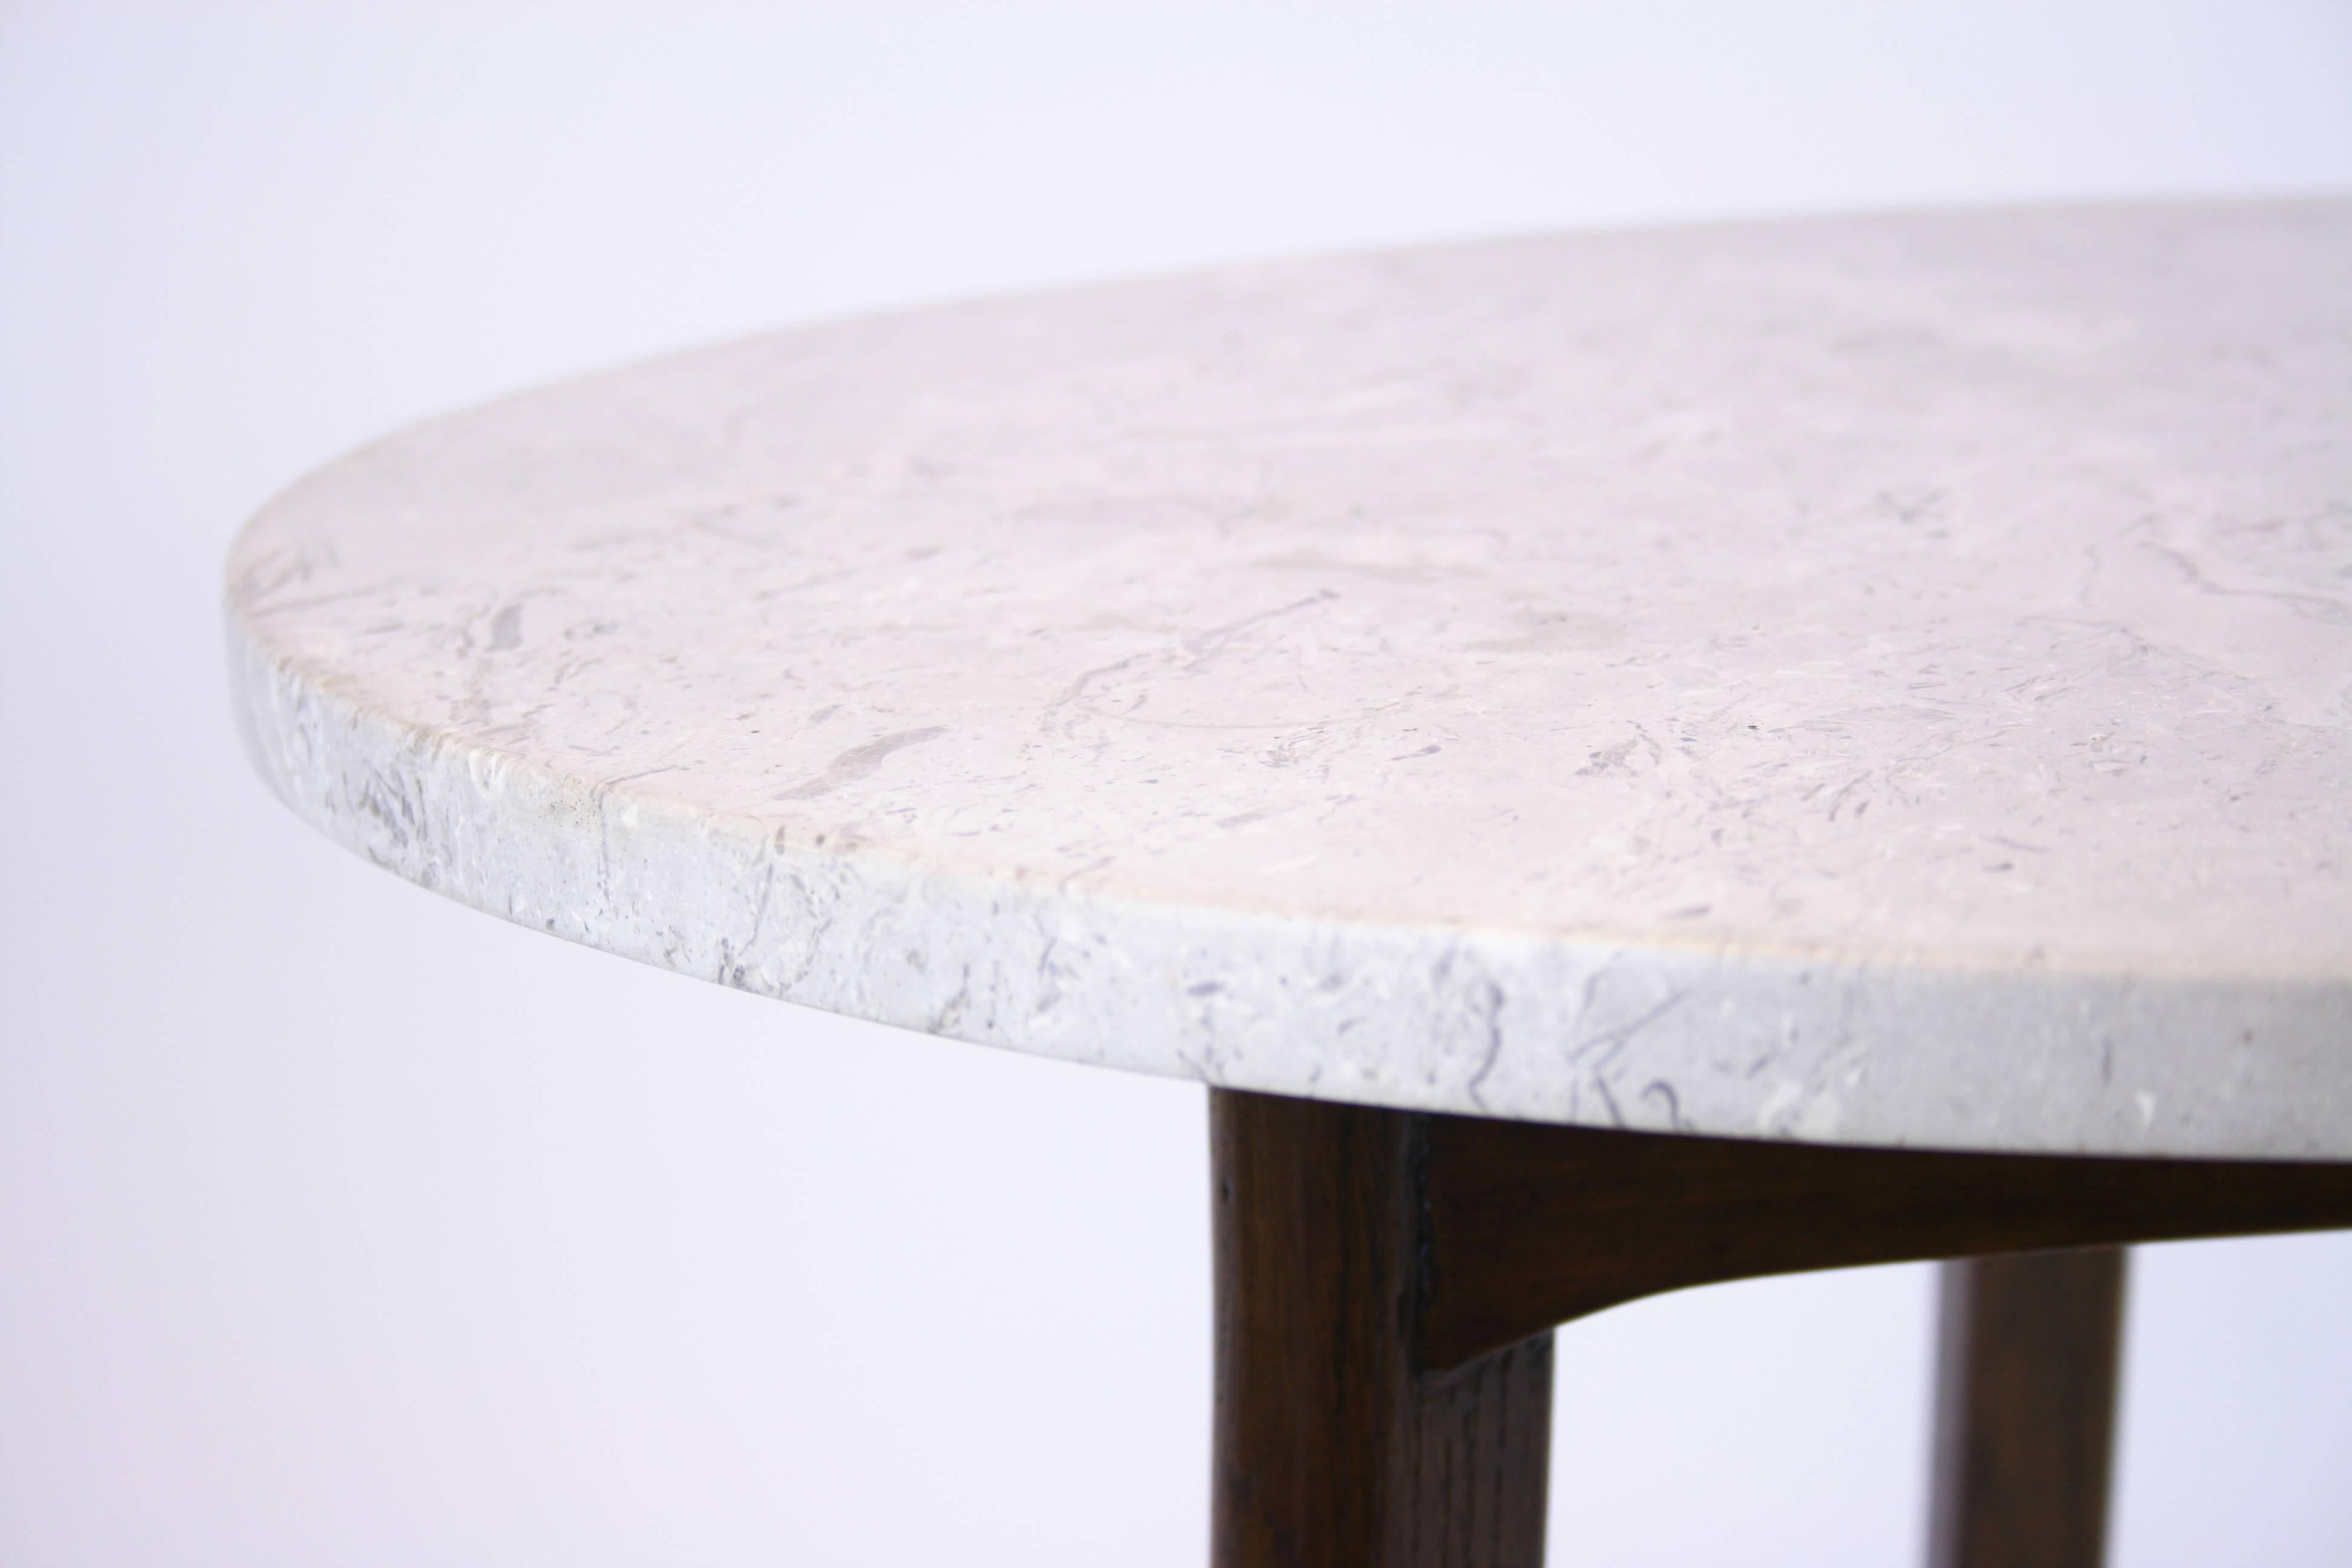 Seltener, Josef Frank zugeschriebener Beistelltisch mit runder Steintischplatte. Der Grundrahmen ist aus massiver Eiche gefertigt. Dank der hochwertigen Verarbeitung kann der Blick auch von unten genossen werden. Ein echtes Schwergewicht in Sachen